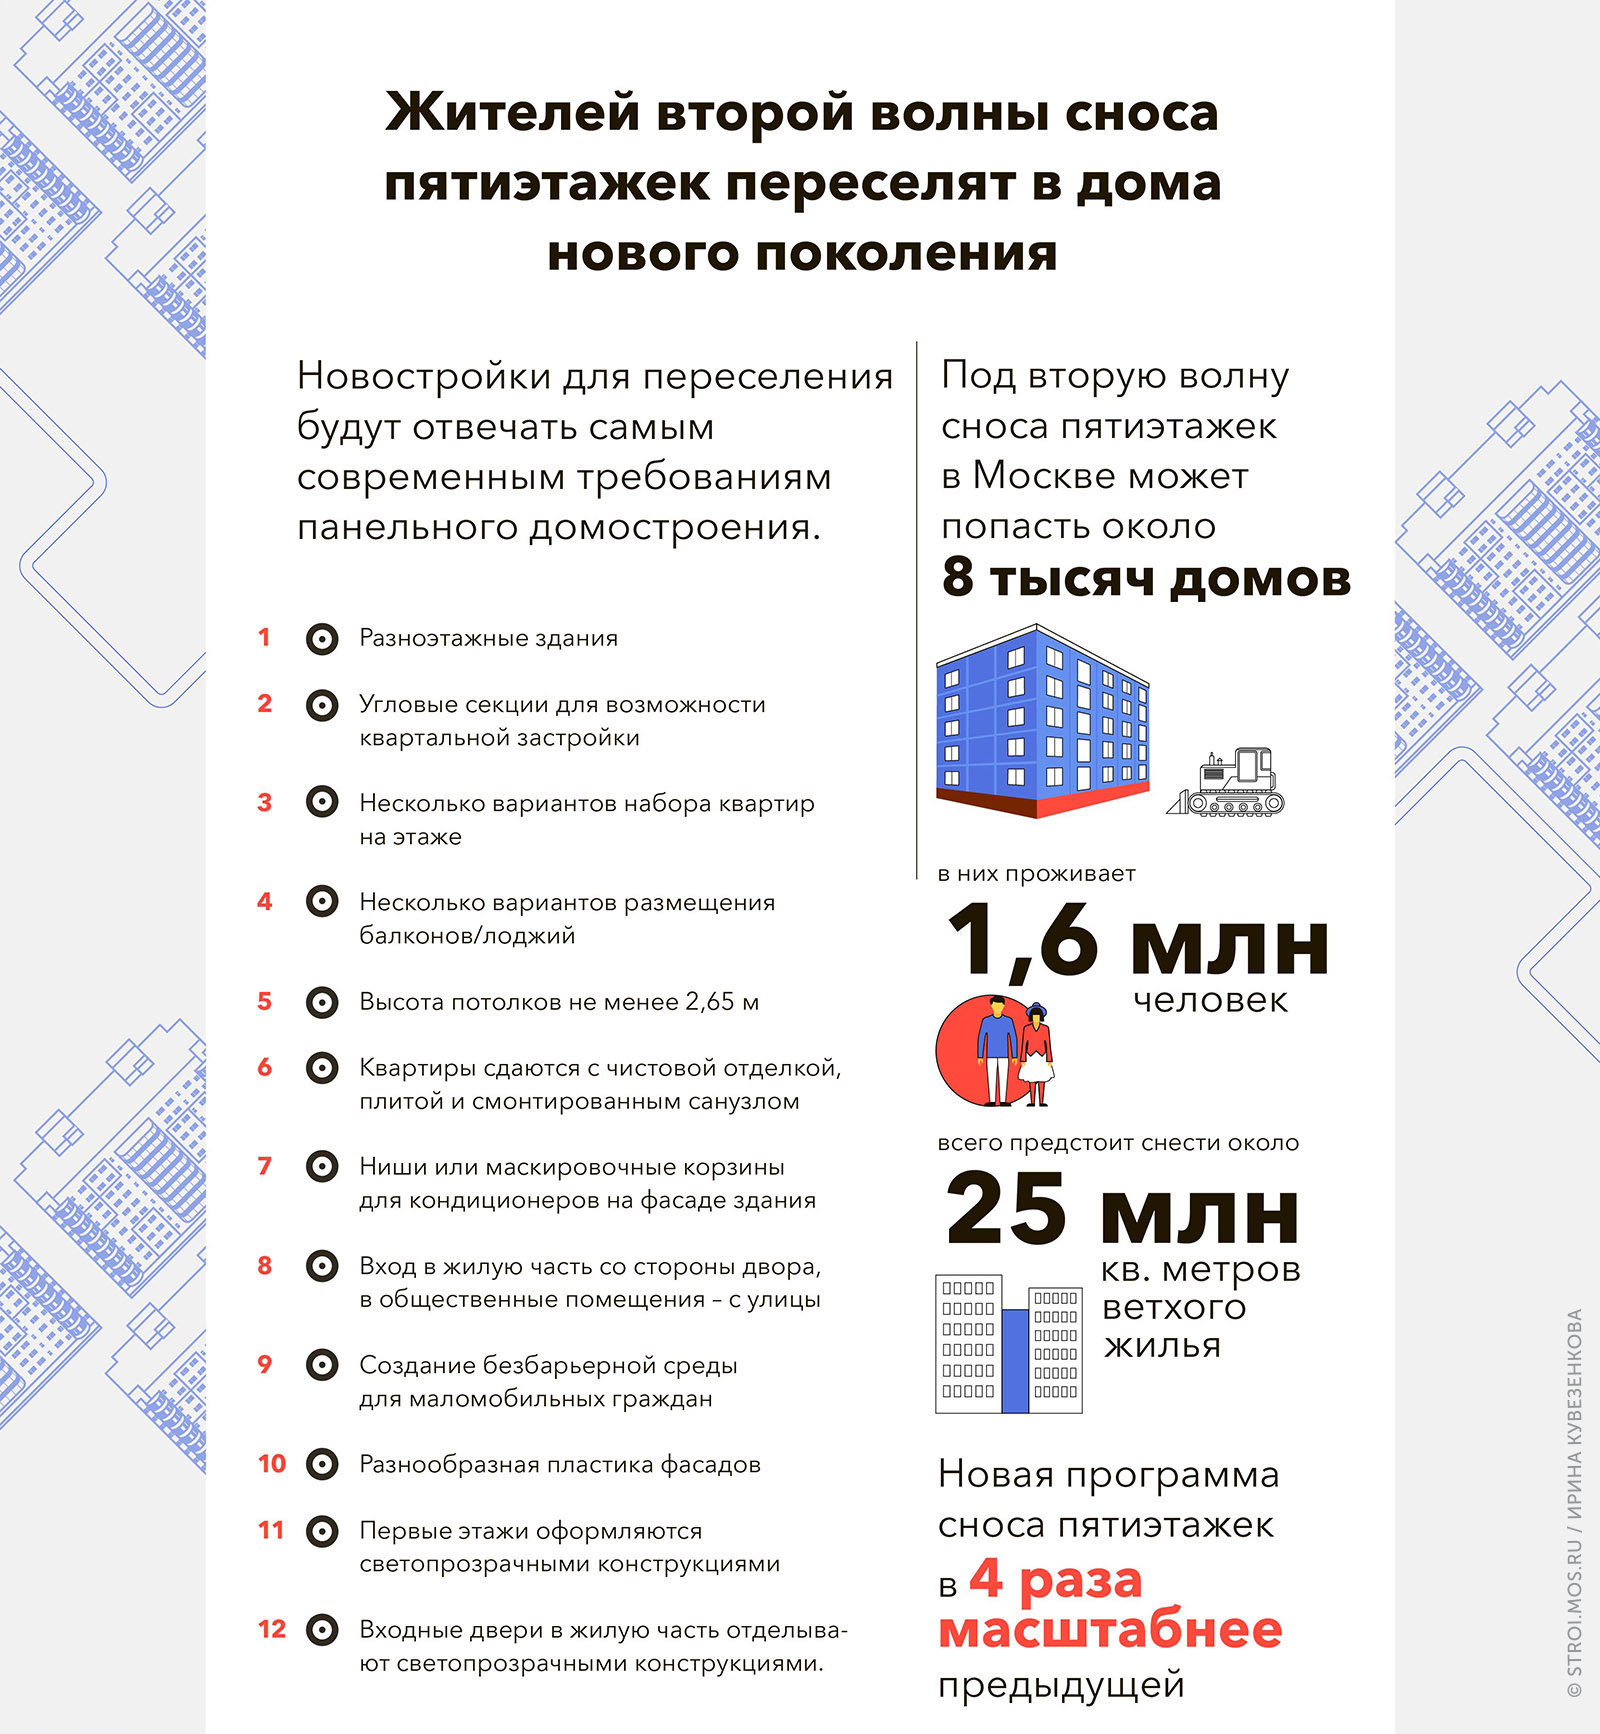 Инфографик "Снос пятиэтажек Москвы в 2017 году"